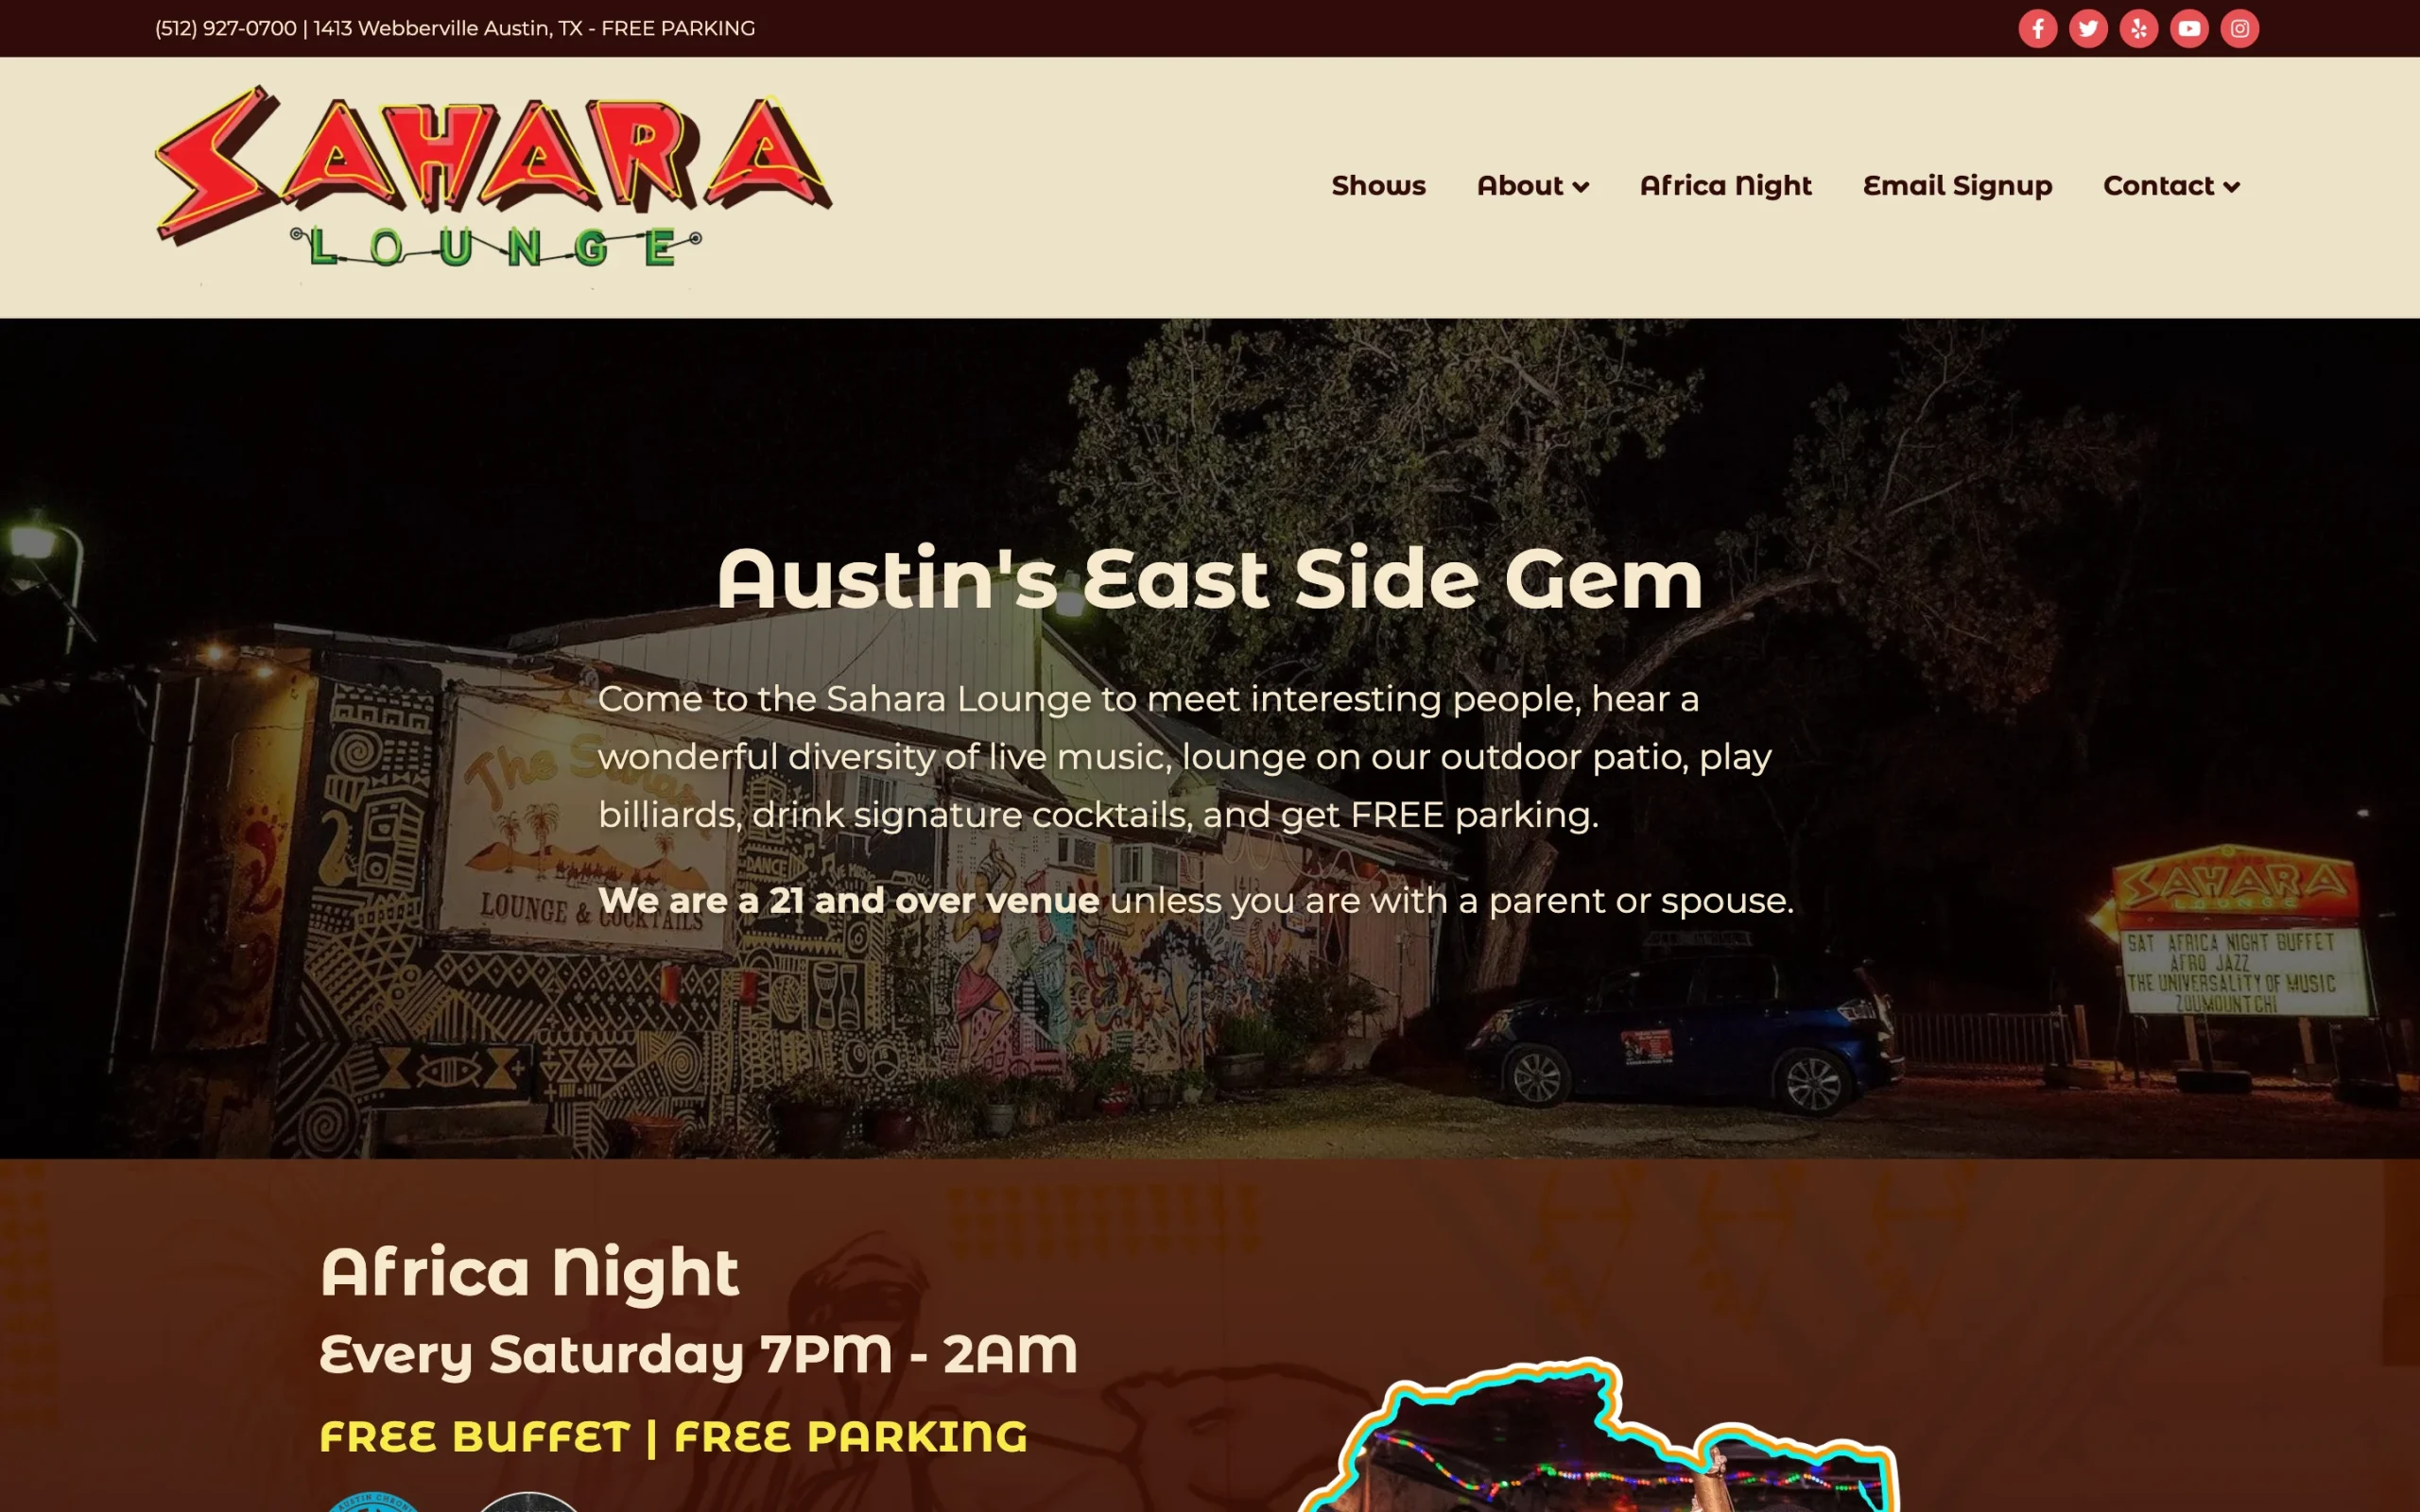 Screenshot of the Sahara Lounge website